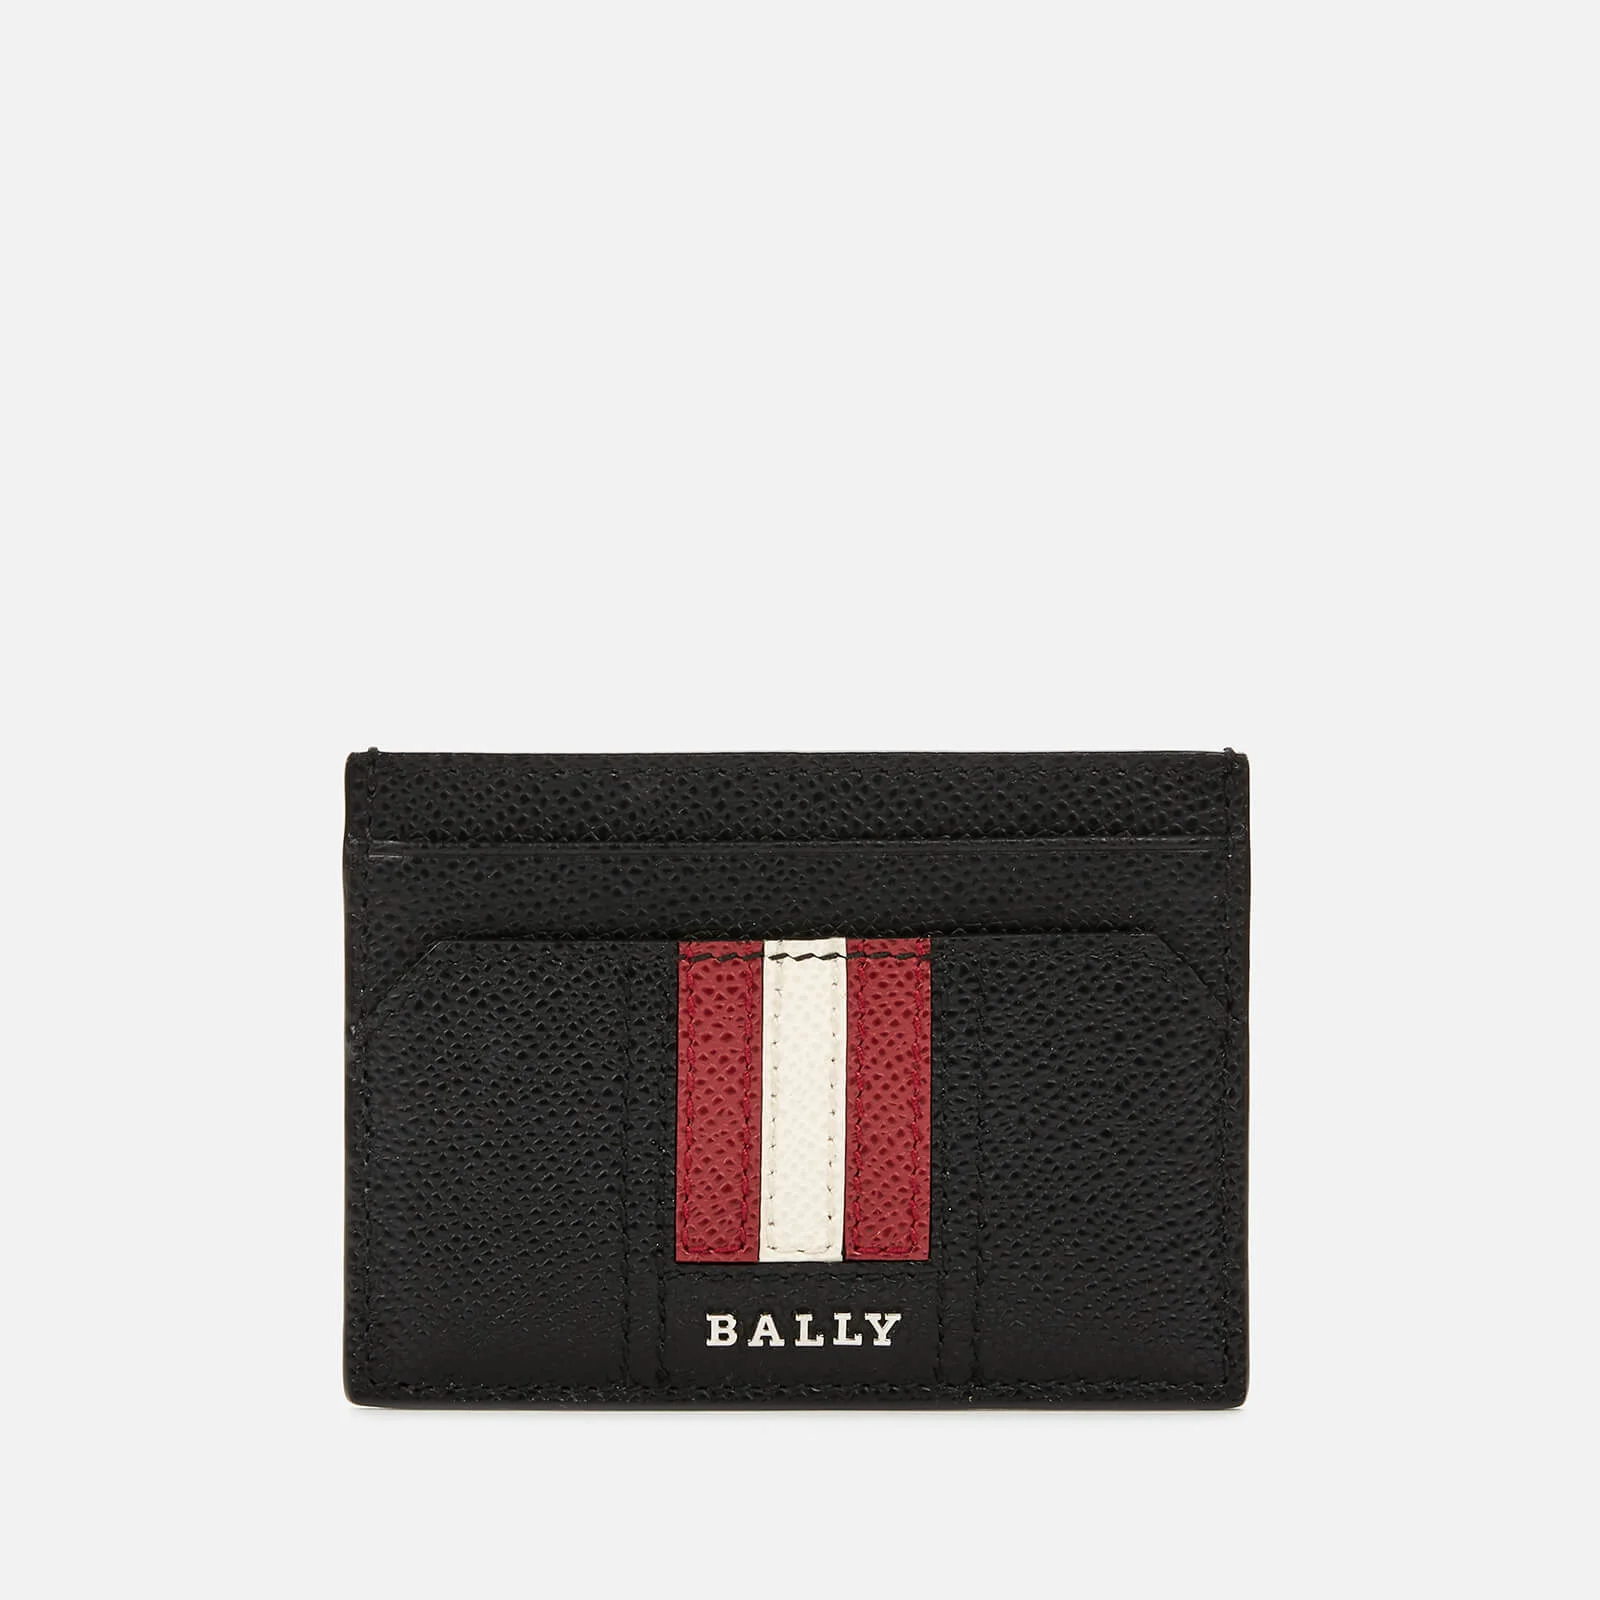 Bally Men's Thar.Lt Business Card Case - Red Bally/Beige Image 1